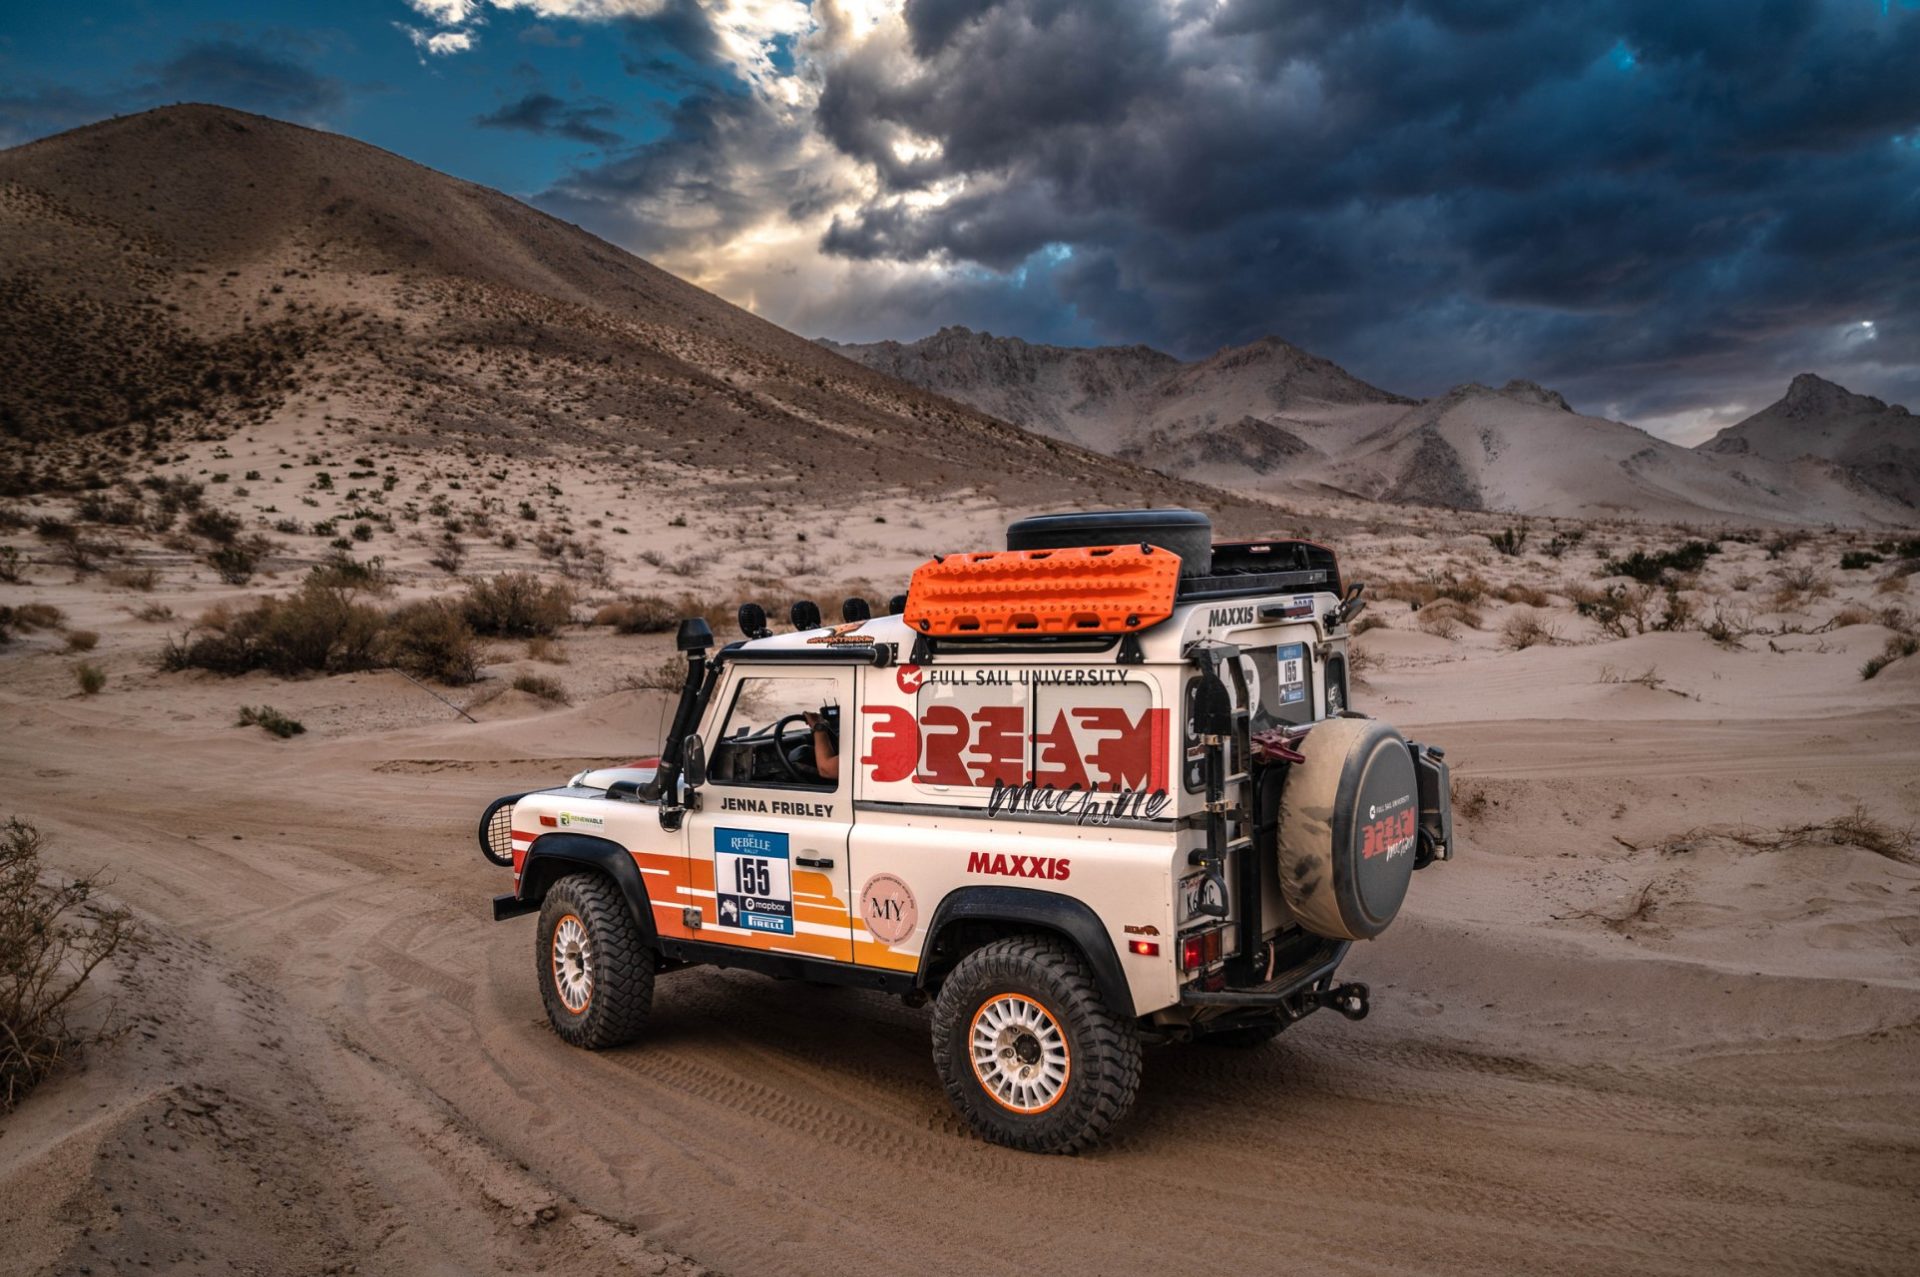 Truck in the desert